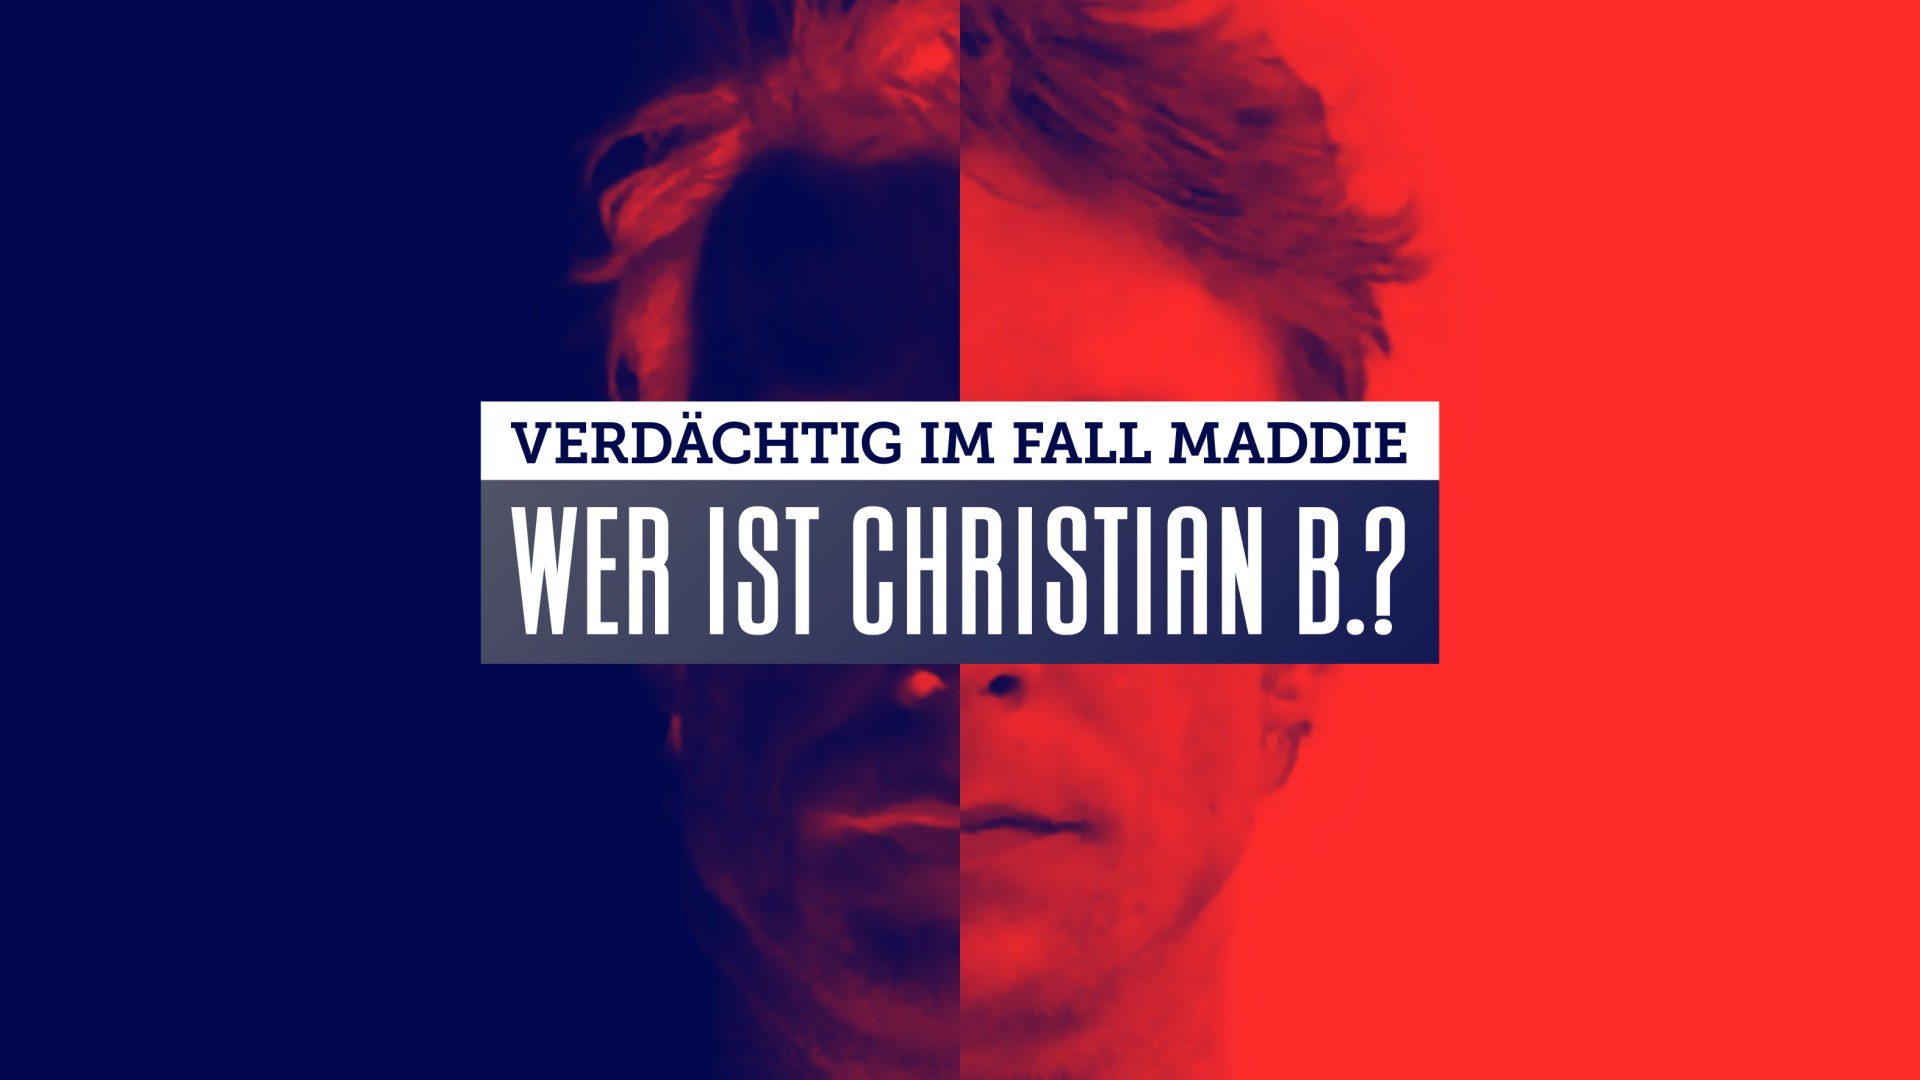 VOX zeigt Dokumentation „Verdächtig im Fall Maddie – Wer ist Christian B.?“ am 26.01. um 20:15 Uhr